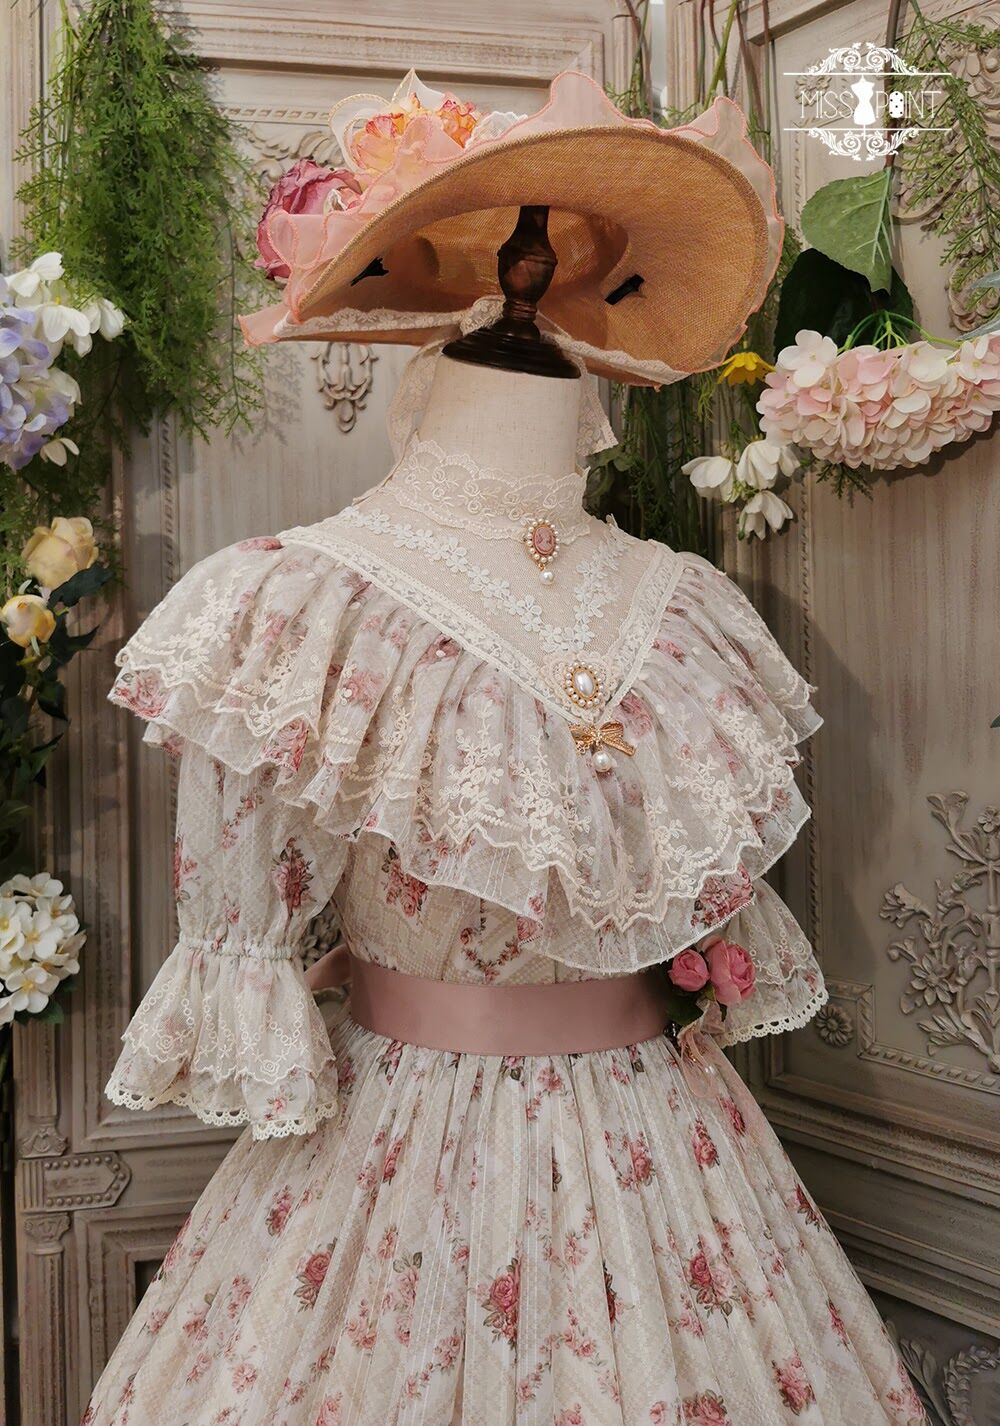 Miss Point 木香薔薇 1.0 レース/花柄 ロング ロリィタドレス